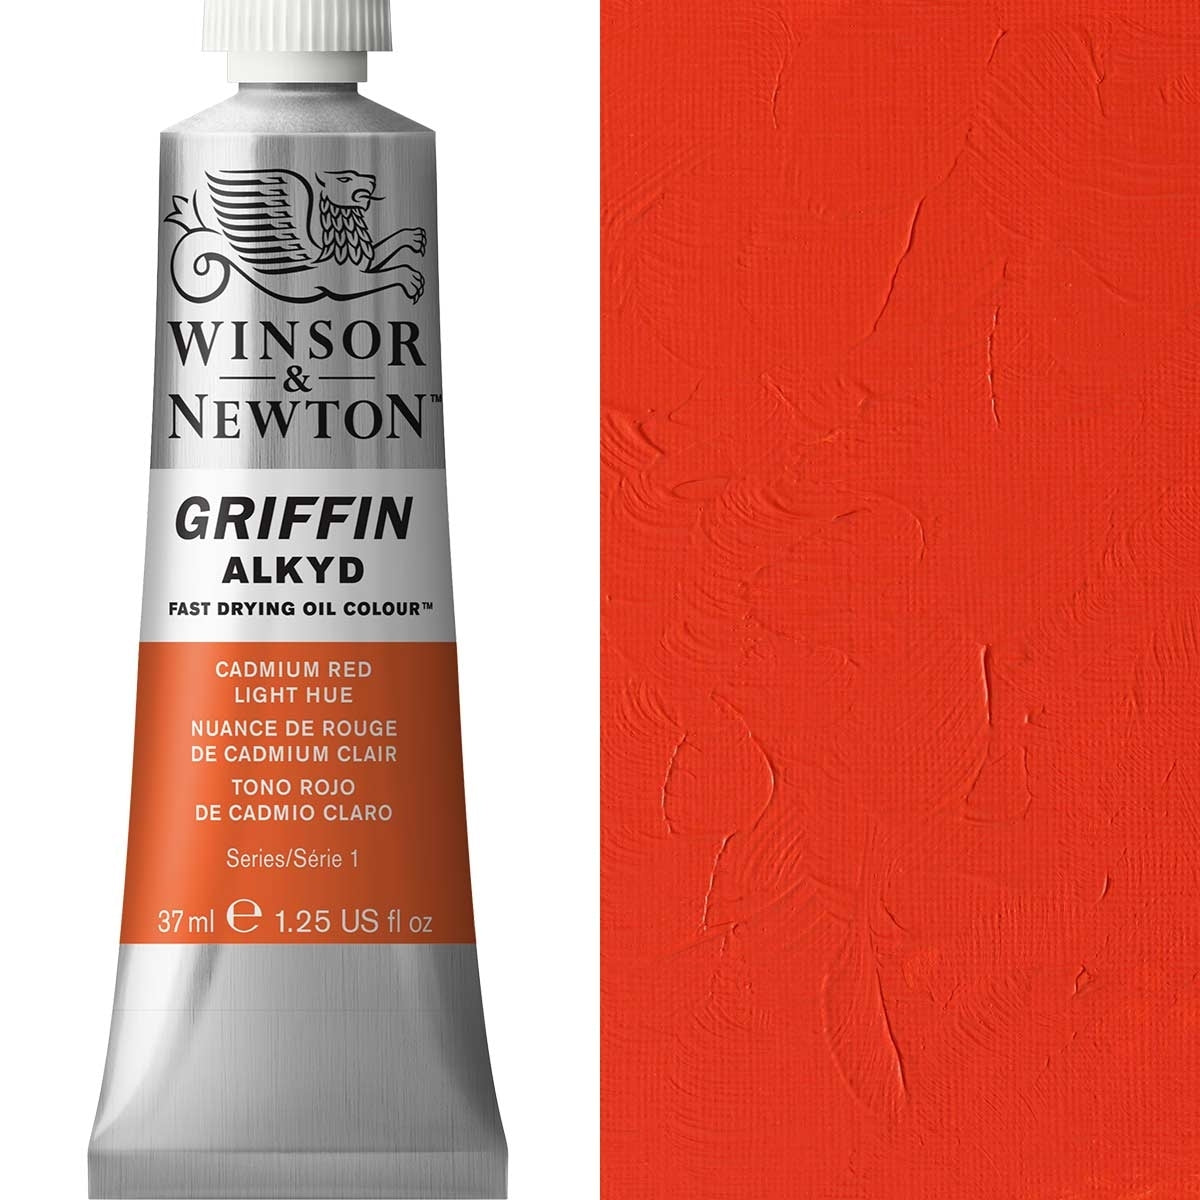 Winsor und Newton - Griffin Alkyd Ölfarbe - 37 ml - Cadmium Rotlichtfarbe